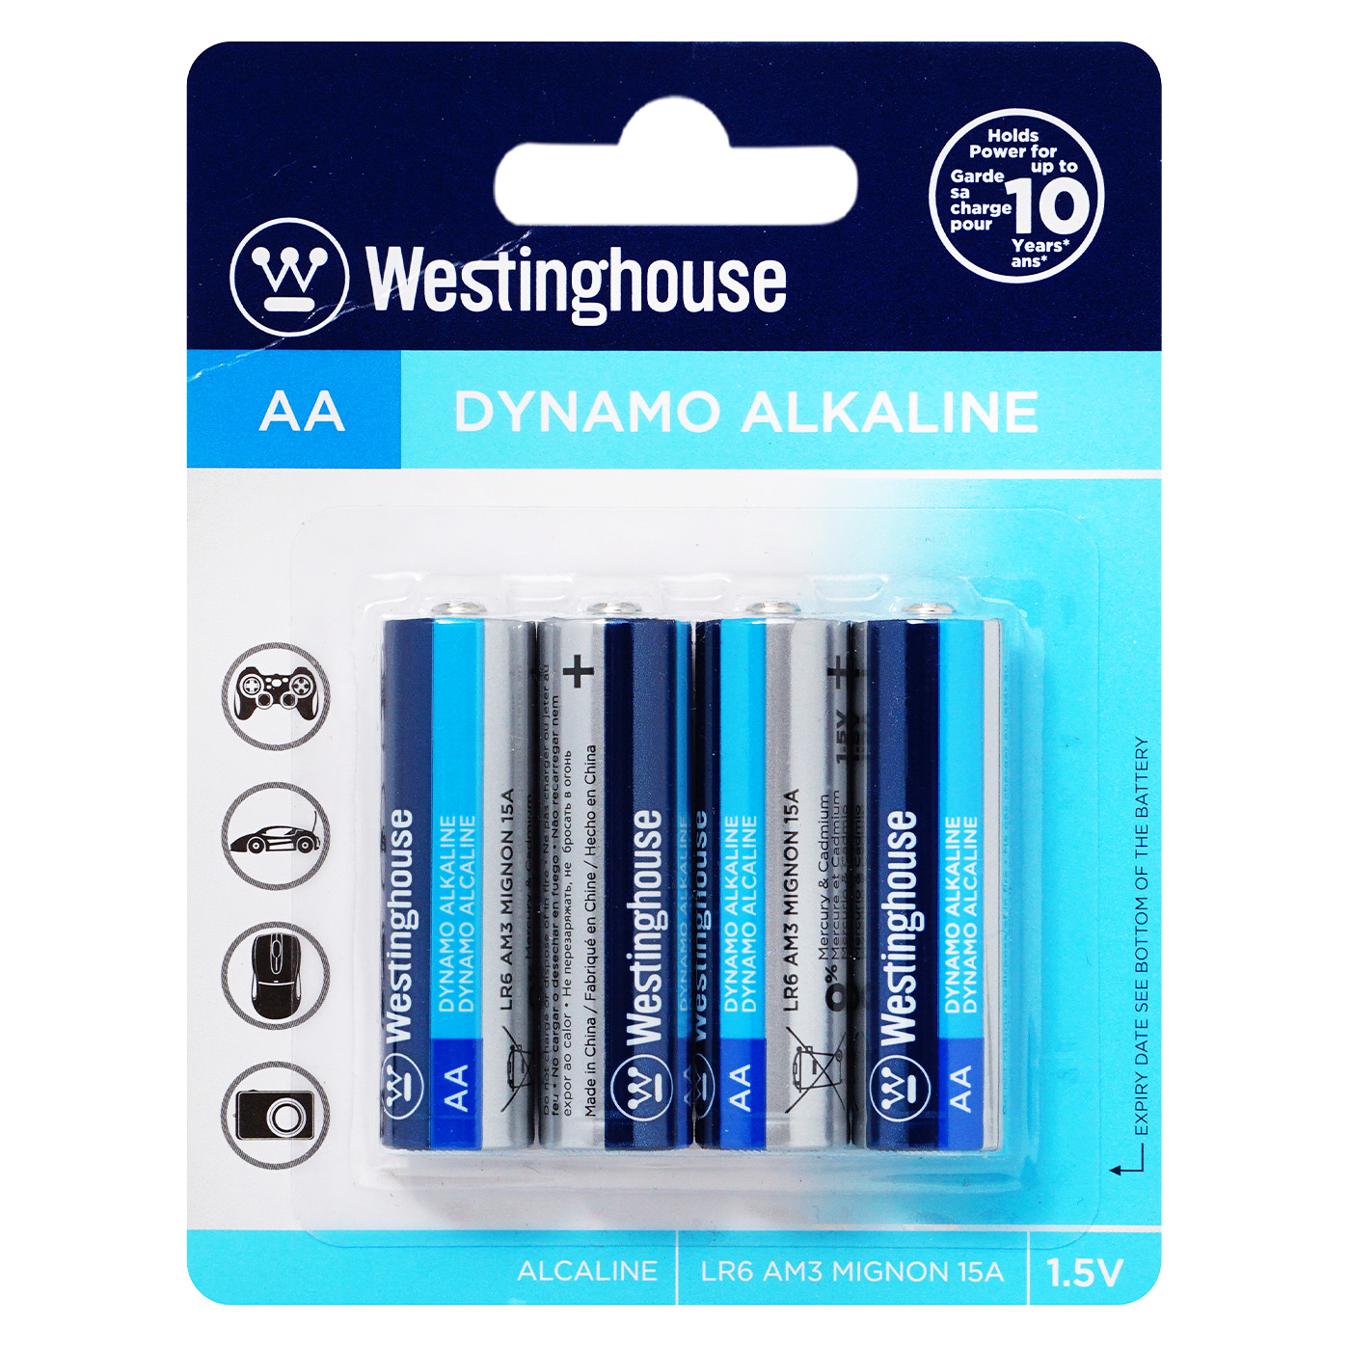 Батарейка Westinghouse Alkaline Dynamo AA 4шт